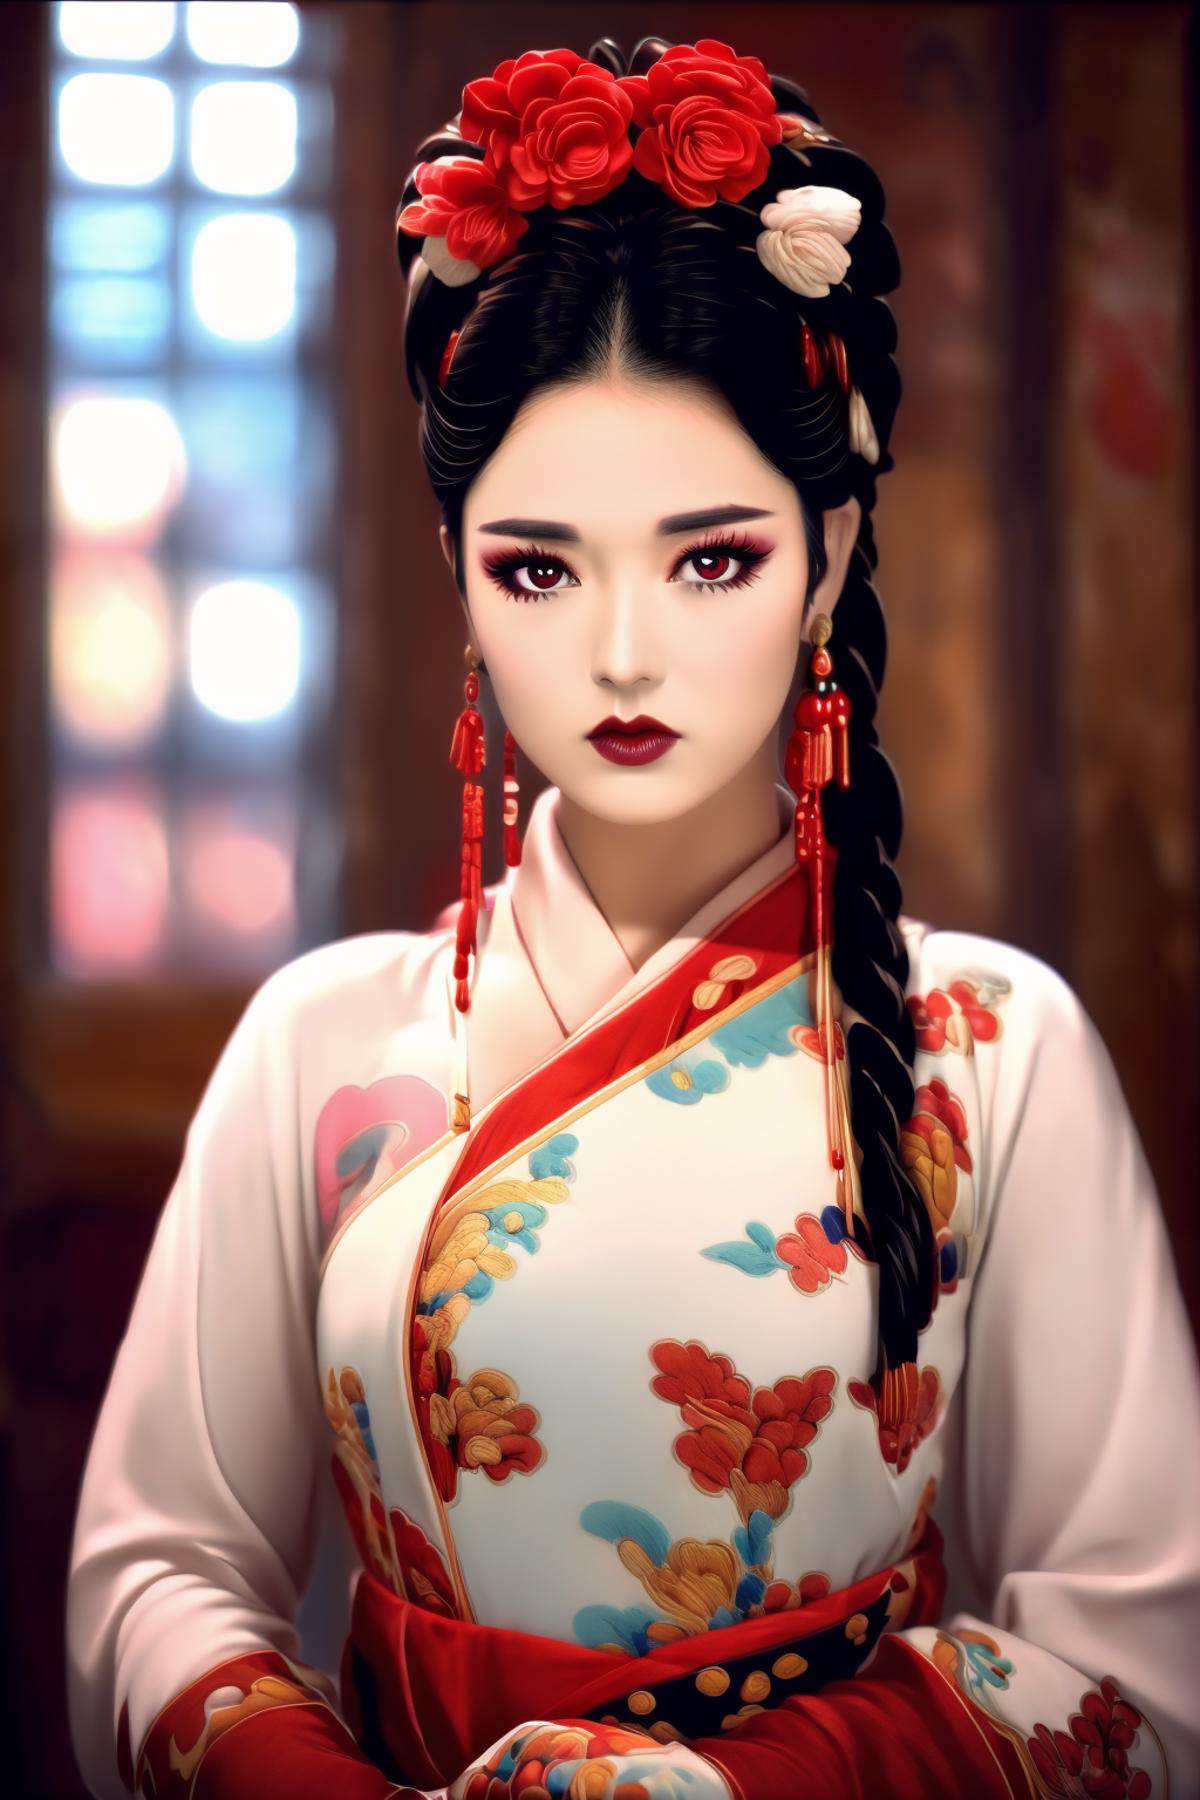 China Opera 京粤剧元素 style image by YuntaoHu